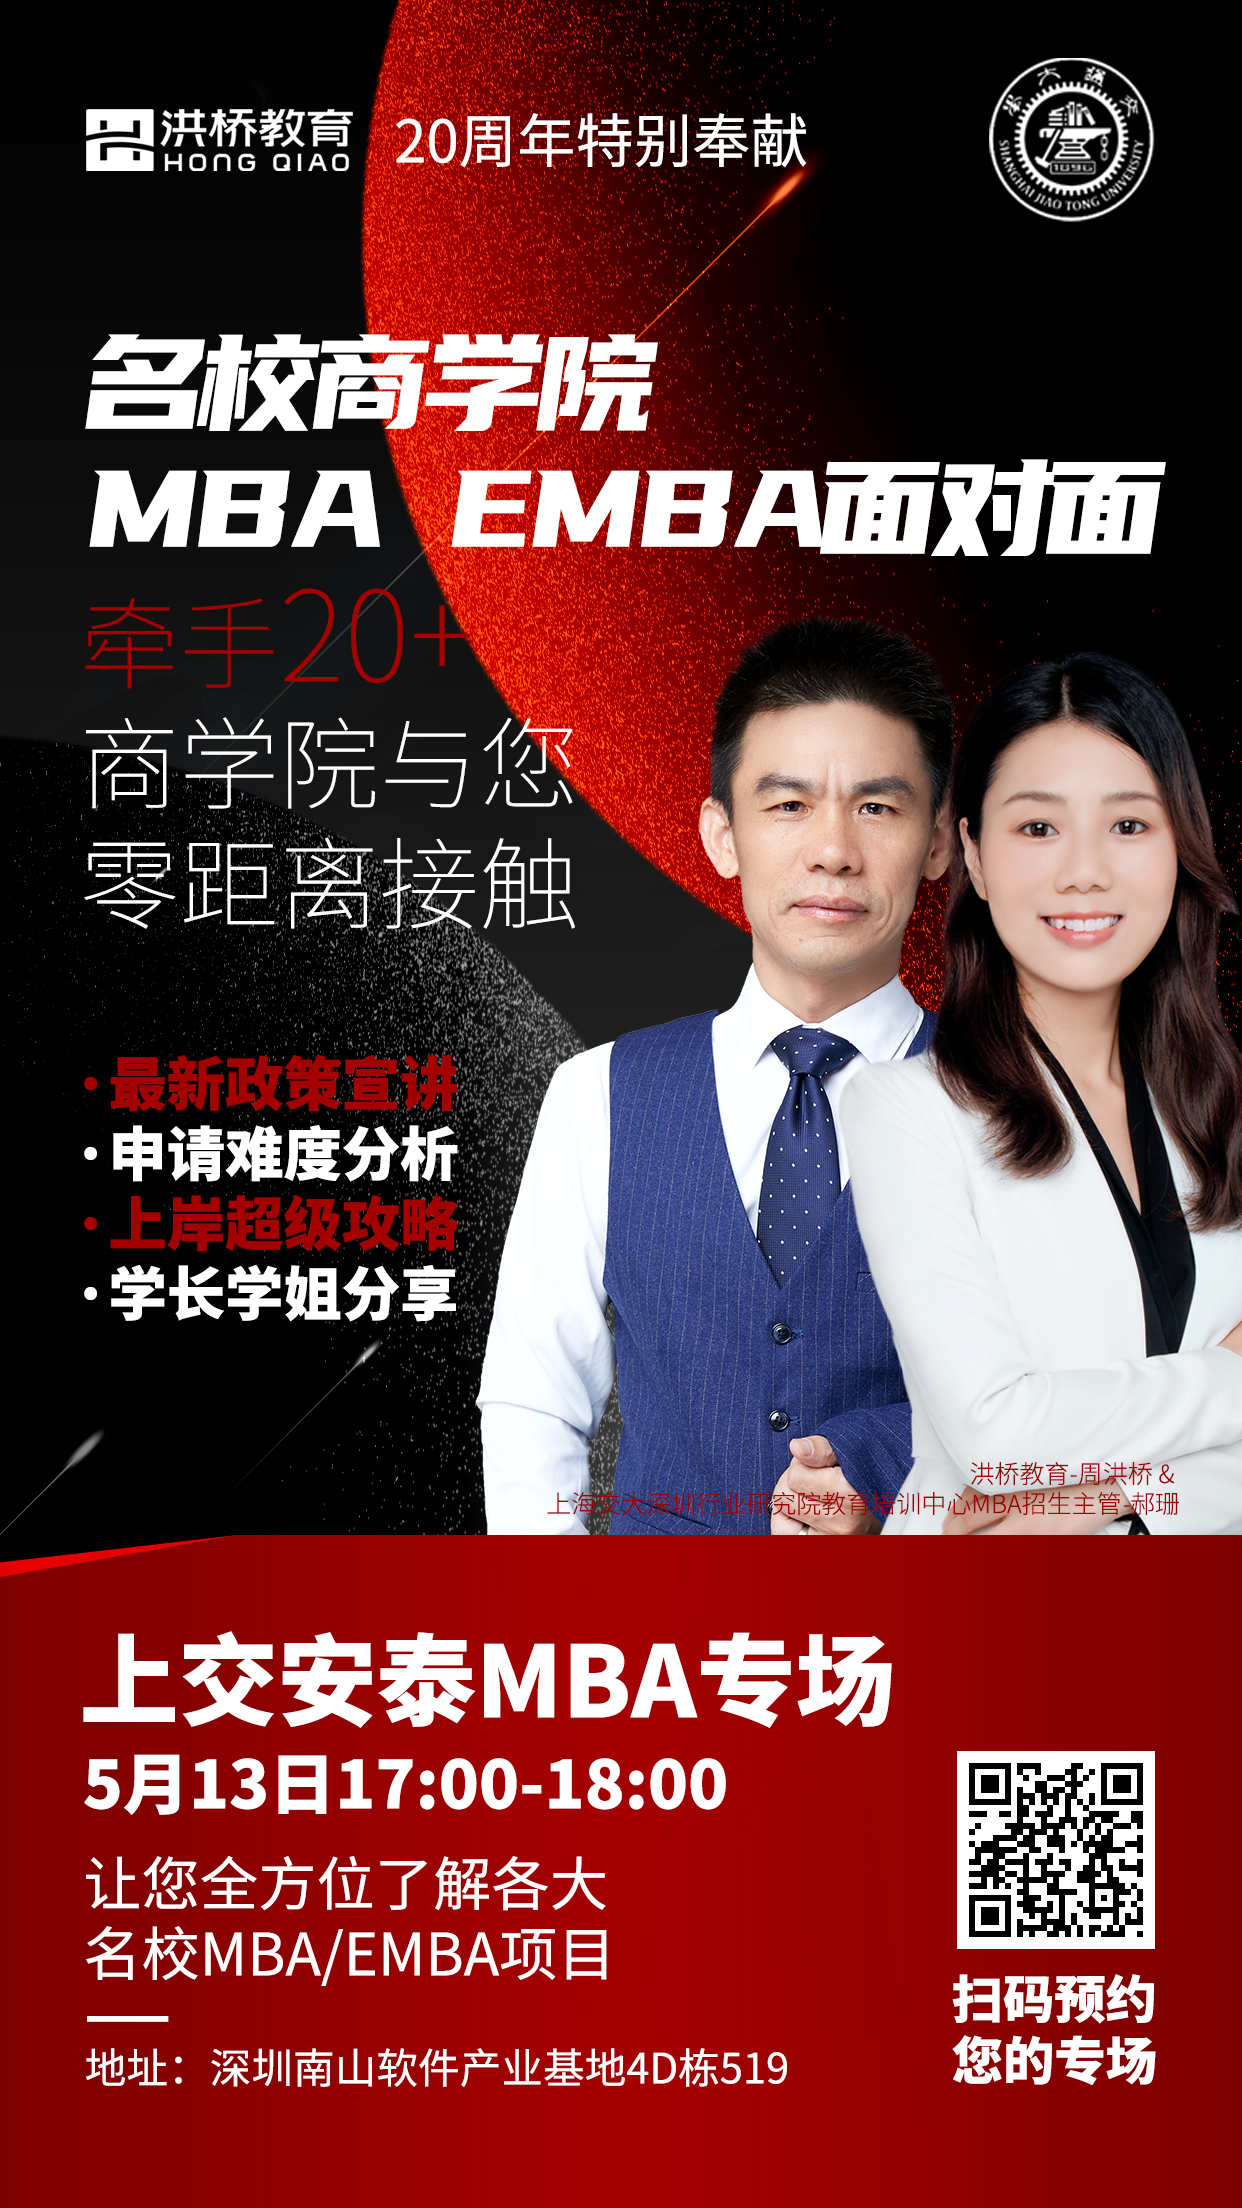 名校商学院MBA EMBA面对面系列活动